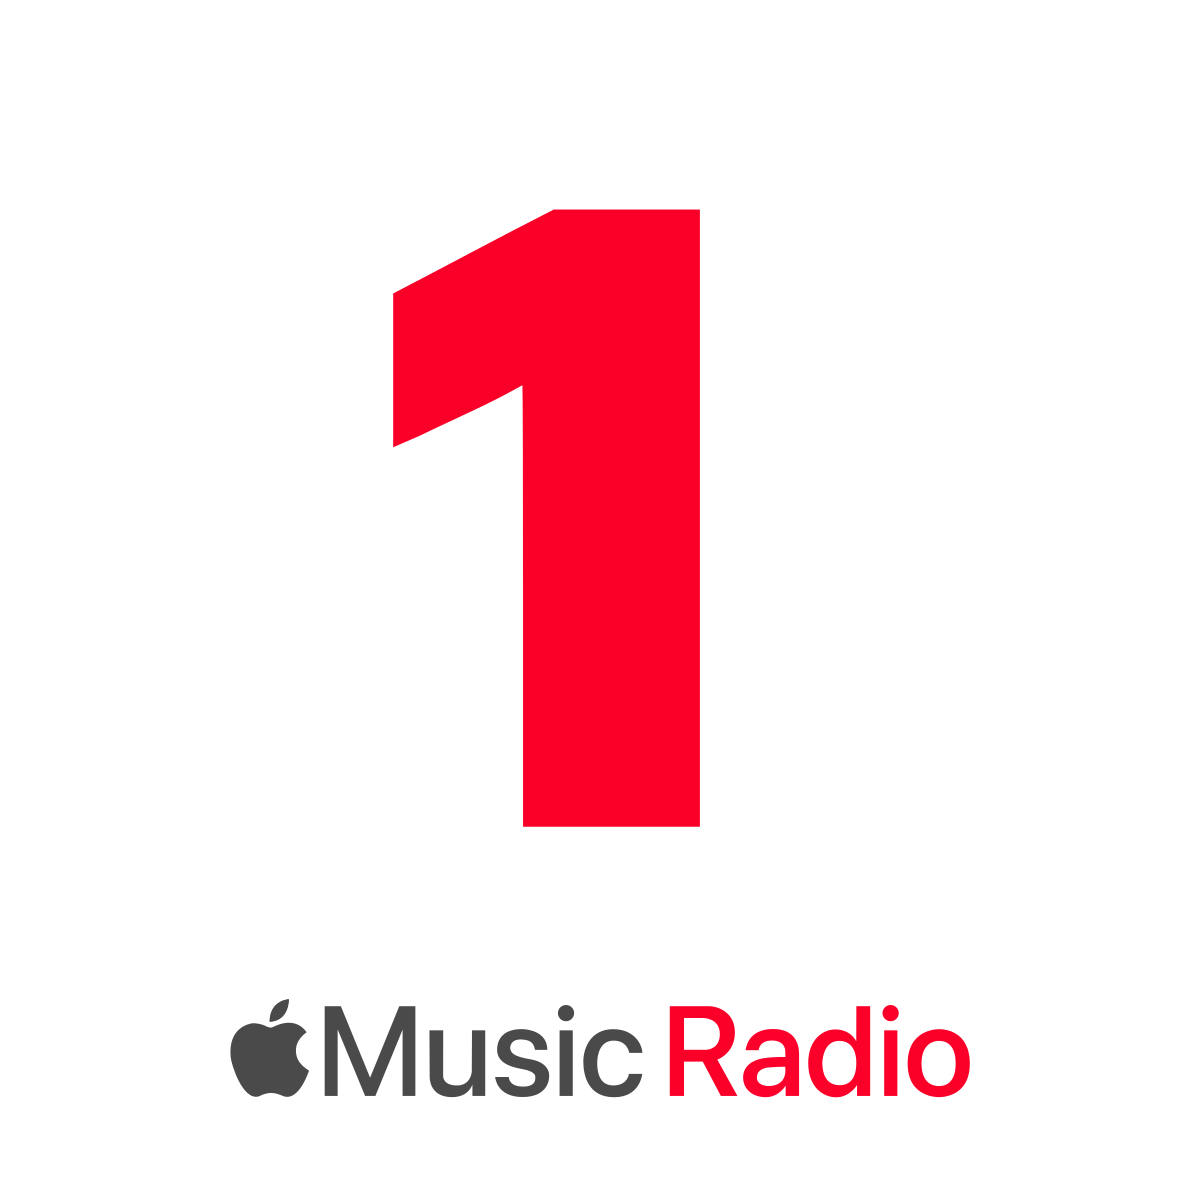 Imagem transparente do logotipo da música da Apple PNG